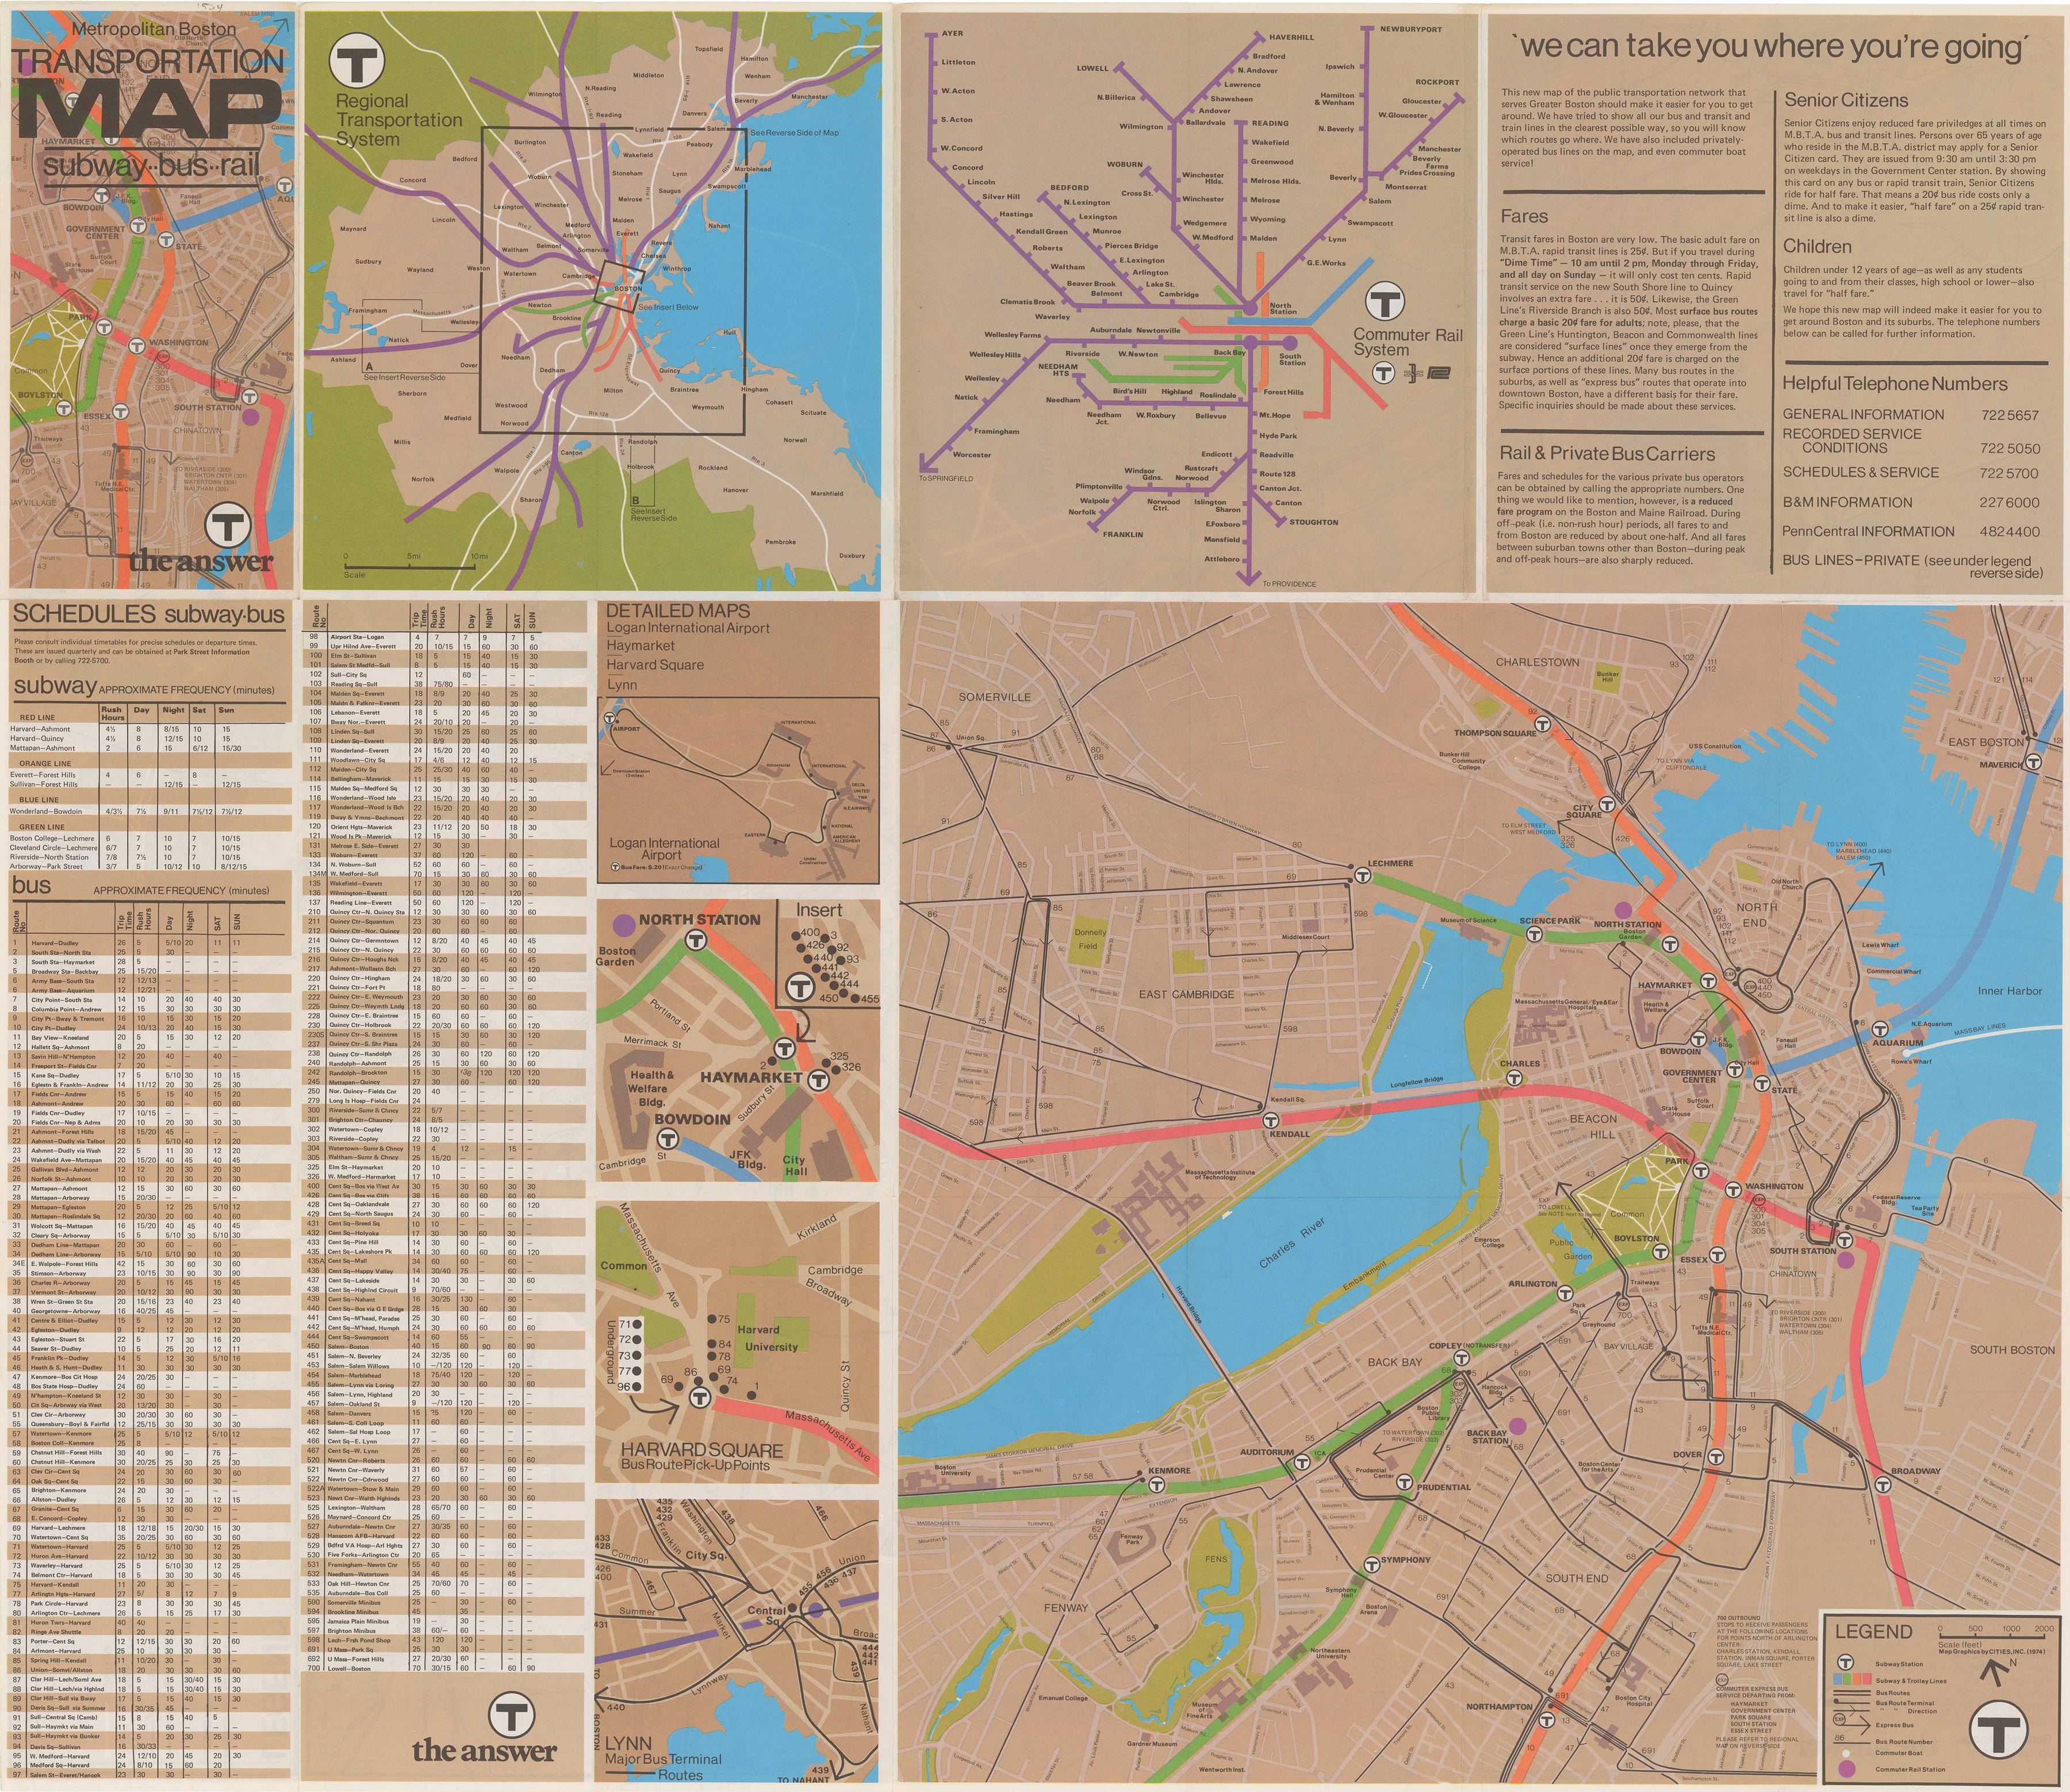 Image of Metropolitan Boston Transportation Map: Subway-Bus-Rail